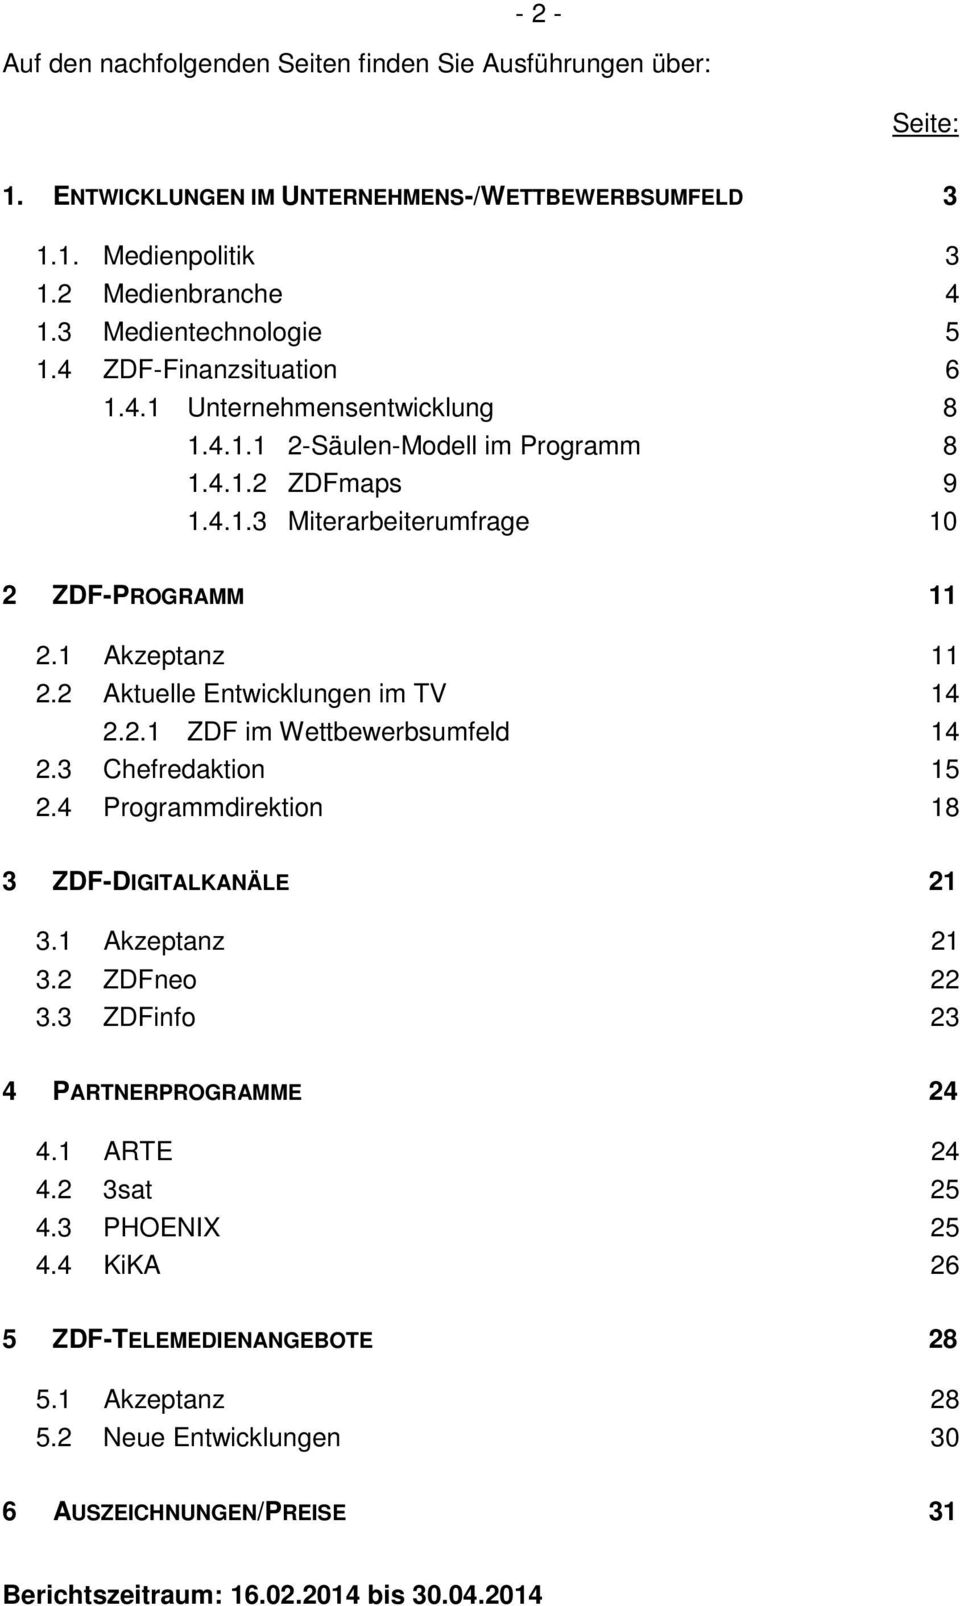 2 Aktuelle Entwicklungen im TV 14 2.2.1 ZDF im Wettbewerbsumfeld 14 2.3 Chefredaktion 15 2.4 Programmdirektion 18 3 ZDF-DIGITALKANÄLE 21 3.1 Akzeptanz 21 3.2 ZDFneo 22 3.